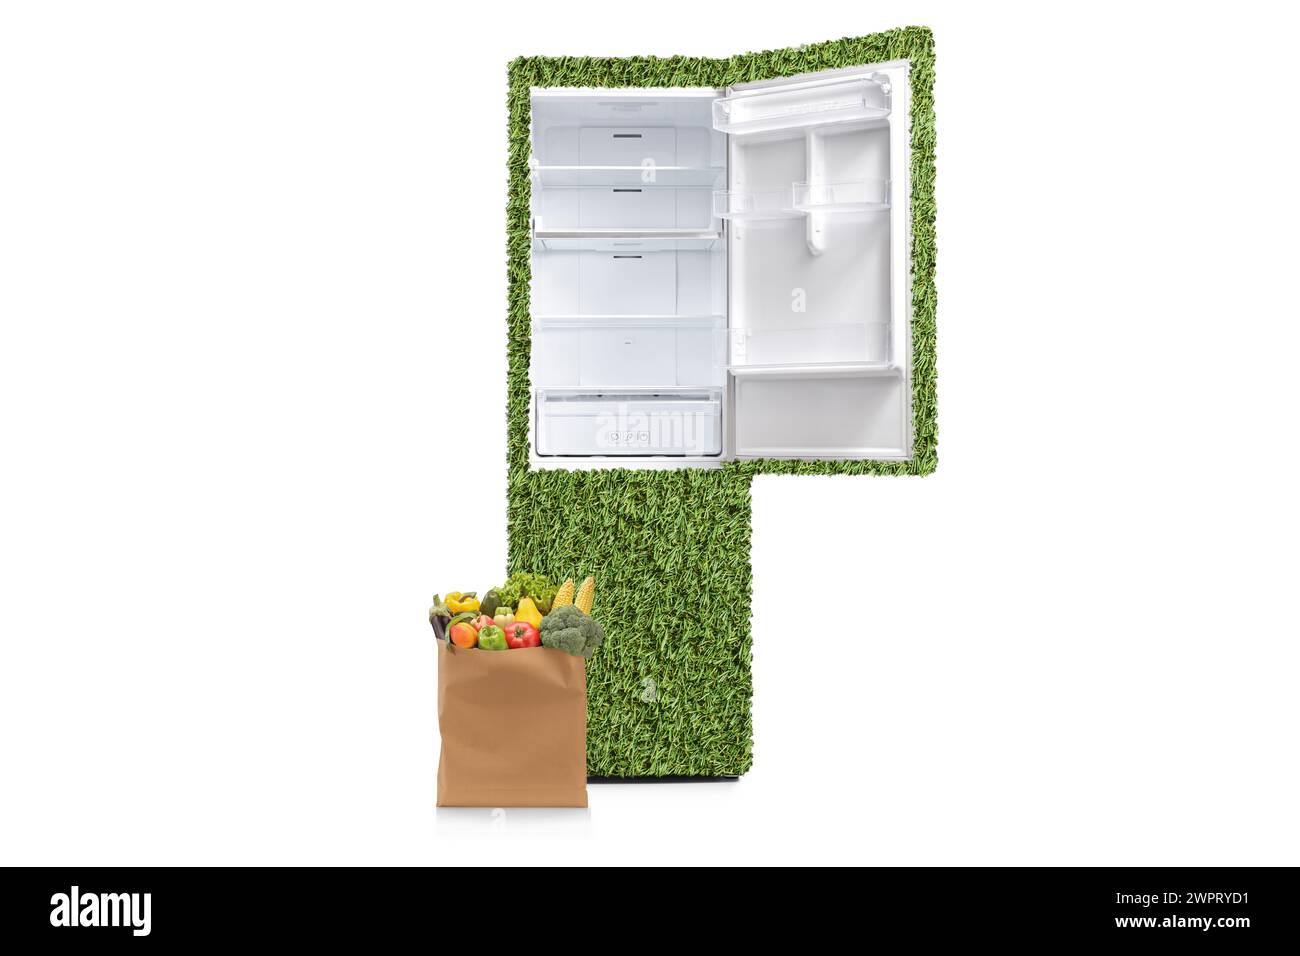 Lebensmitteltasche neben umweltfreundlichem Kühlschrank isoliert auf weißem Hintergrund Stockfoto